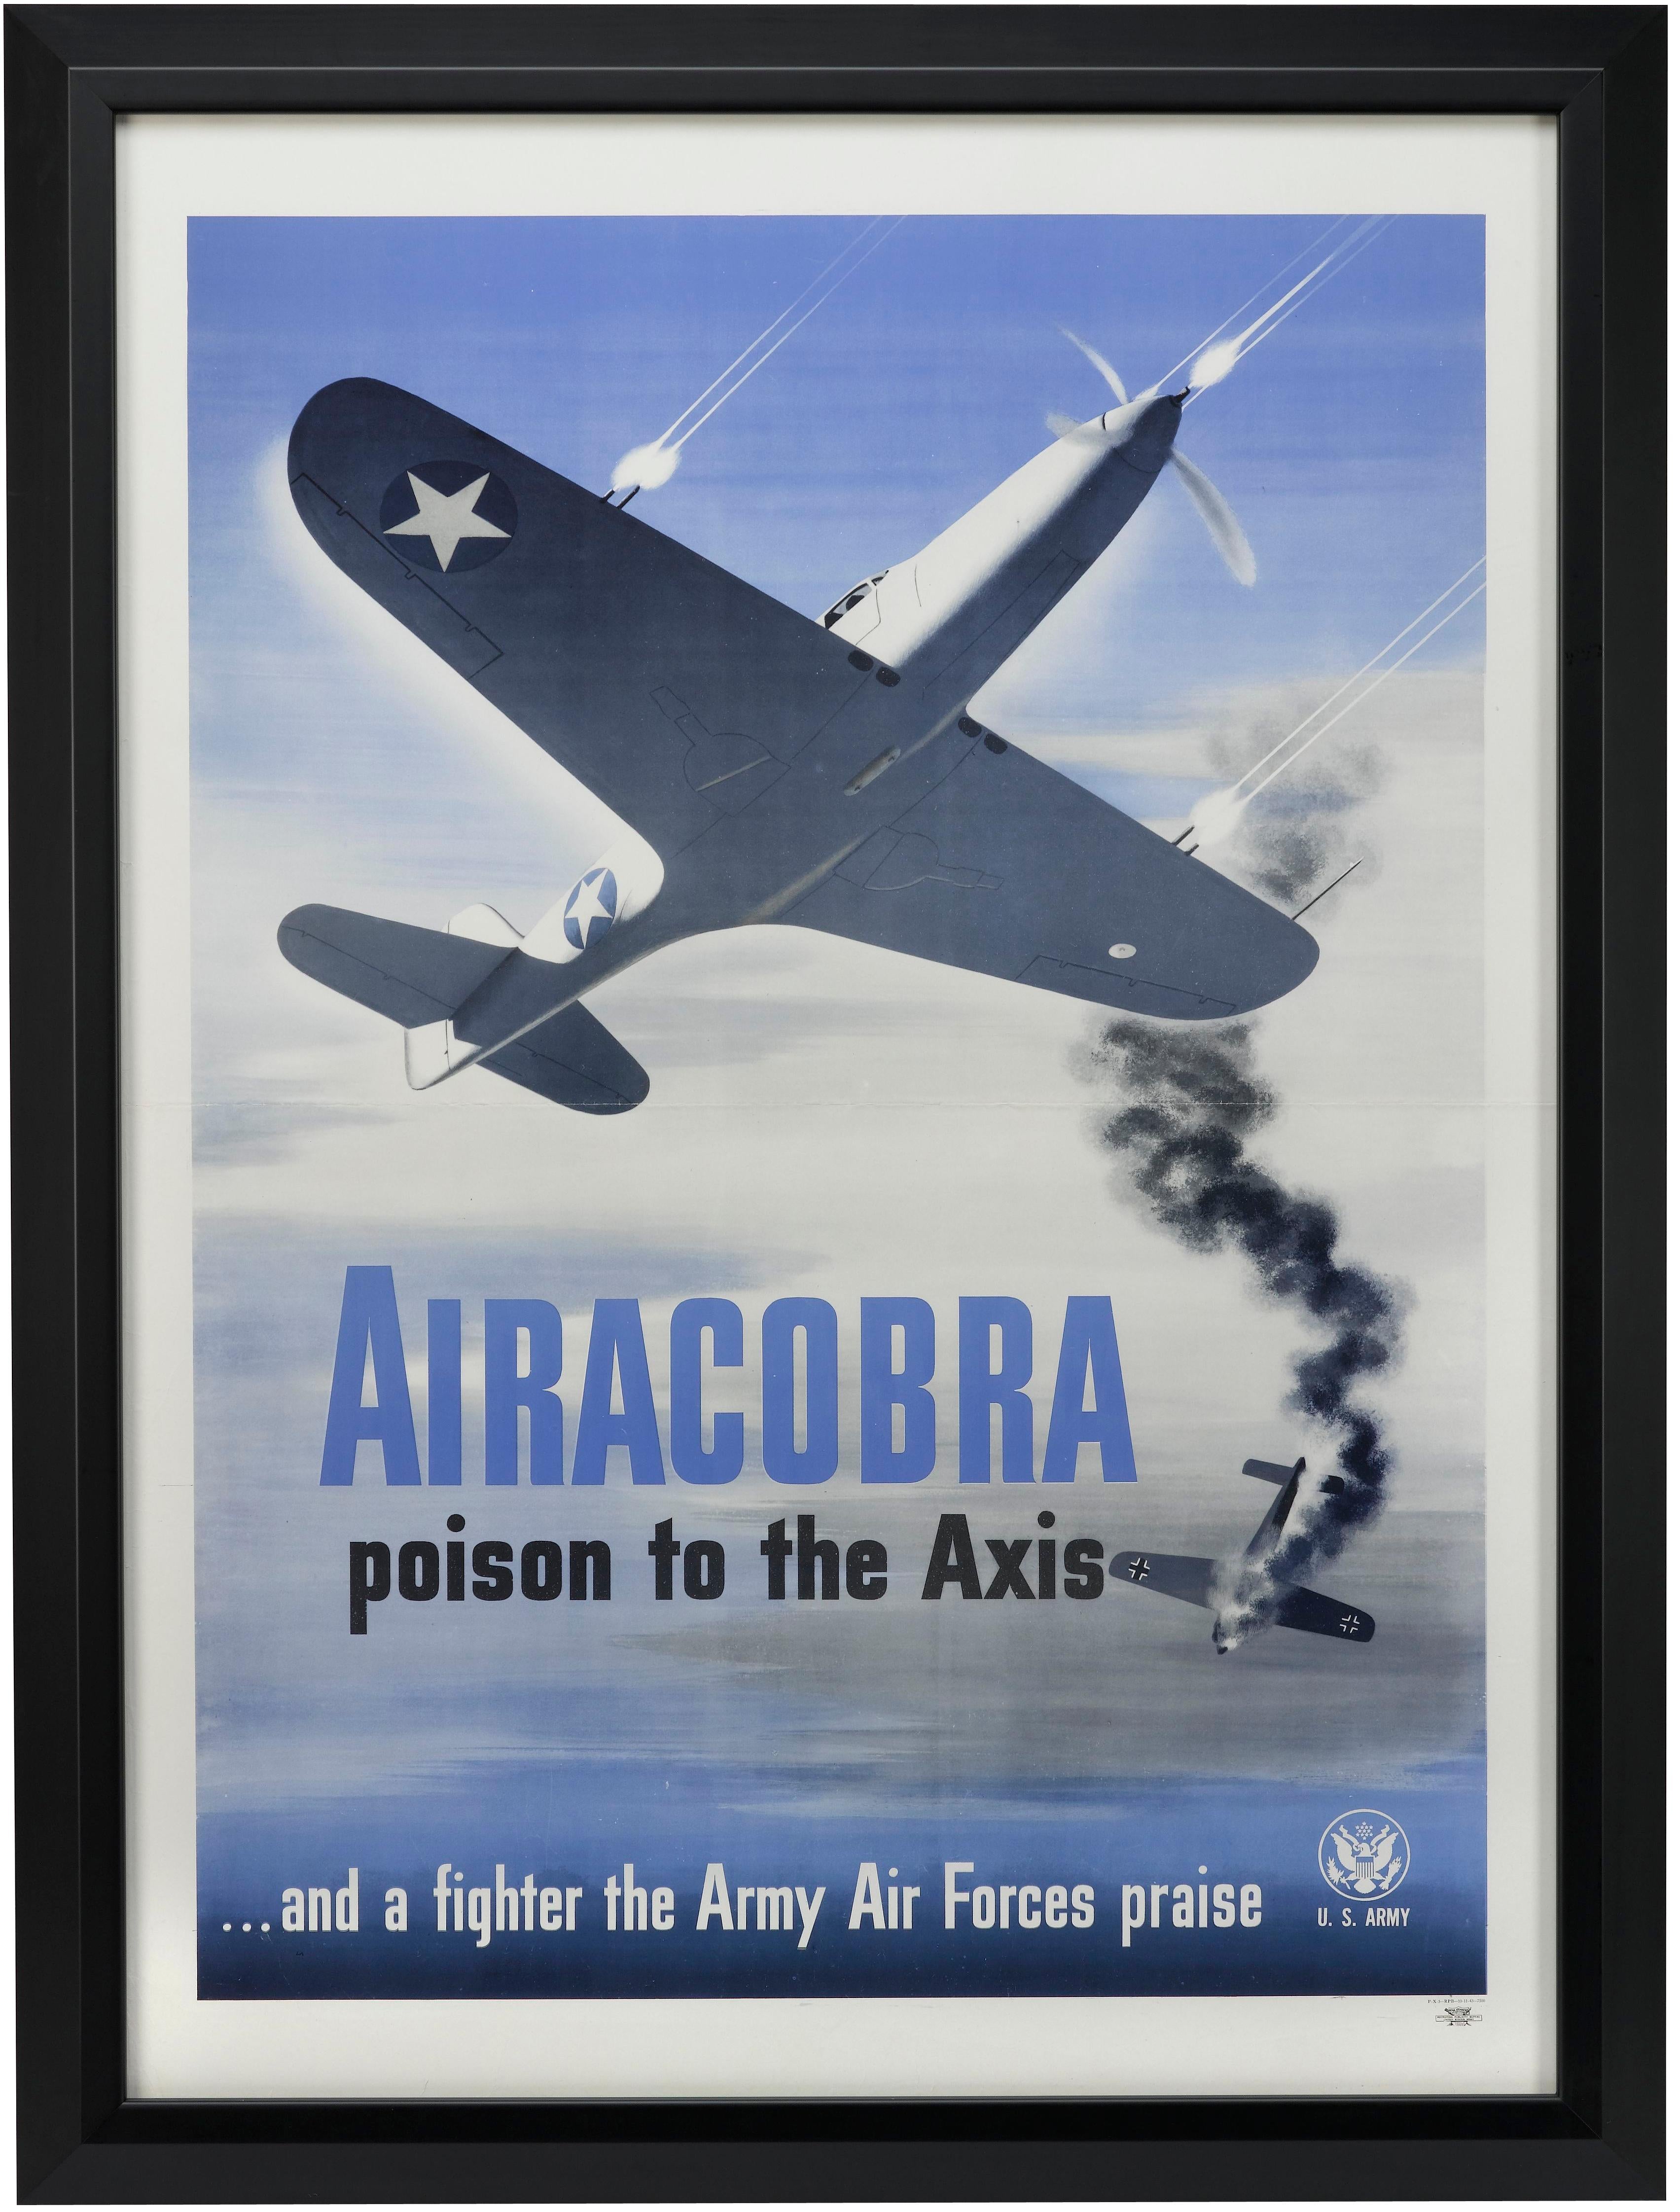 Präsentiert wird ein Vintage WWII U.S. Army Poster eines P-39 Airacobra Kampfflugzeugs. Das Plakat wurde 1943 vom Recruiting Publicity Bureau veröffentlicht. Das Plakat zeigt eine P-39 mitten im Gefecht vor einem strahlend blauen Himmel. Die P-39